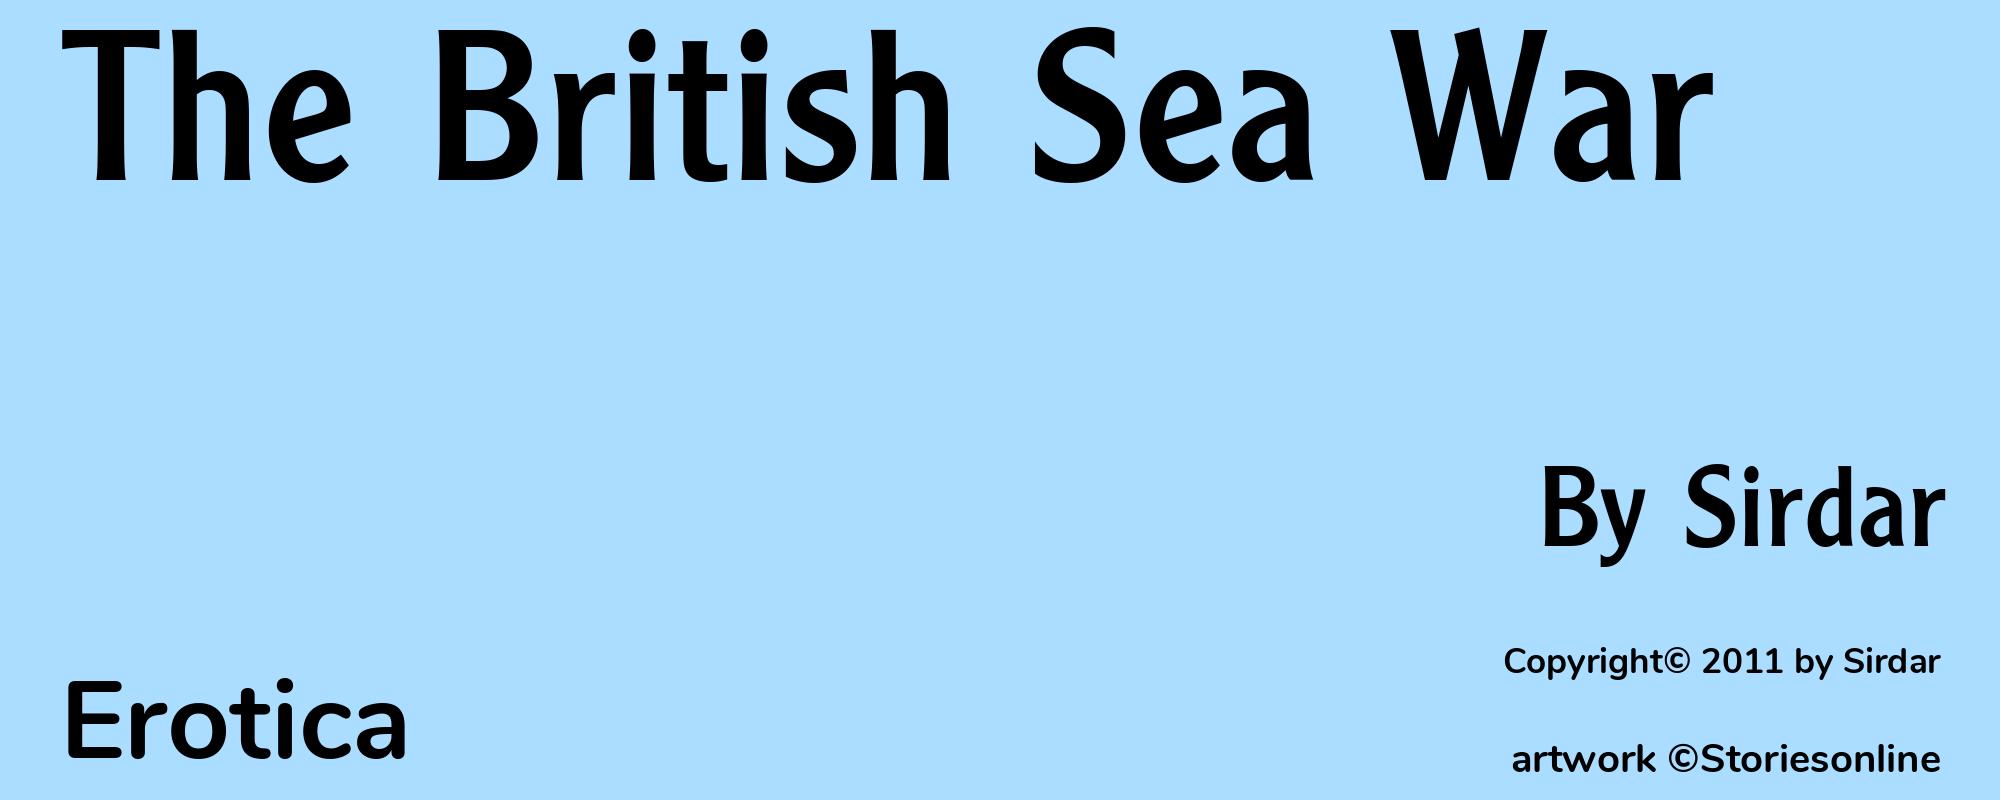 The British Sea War - Cover